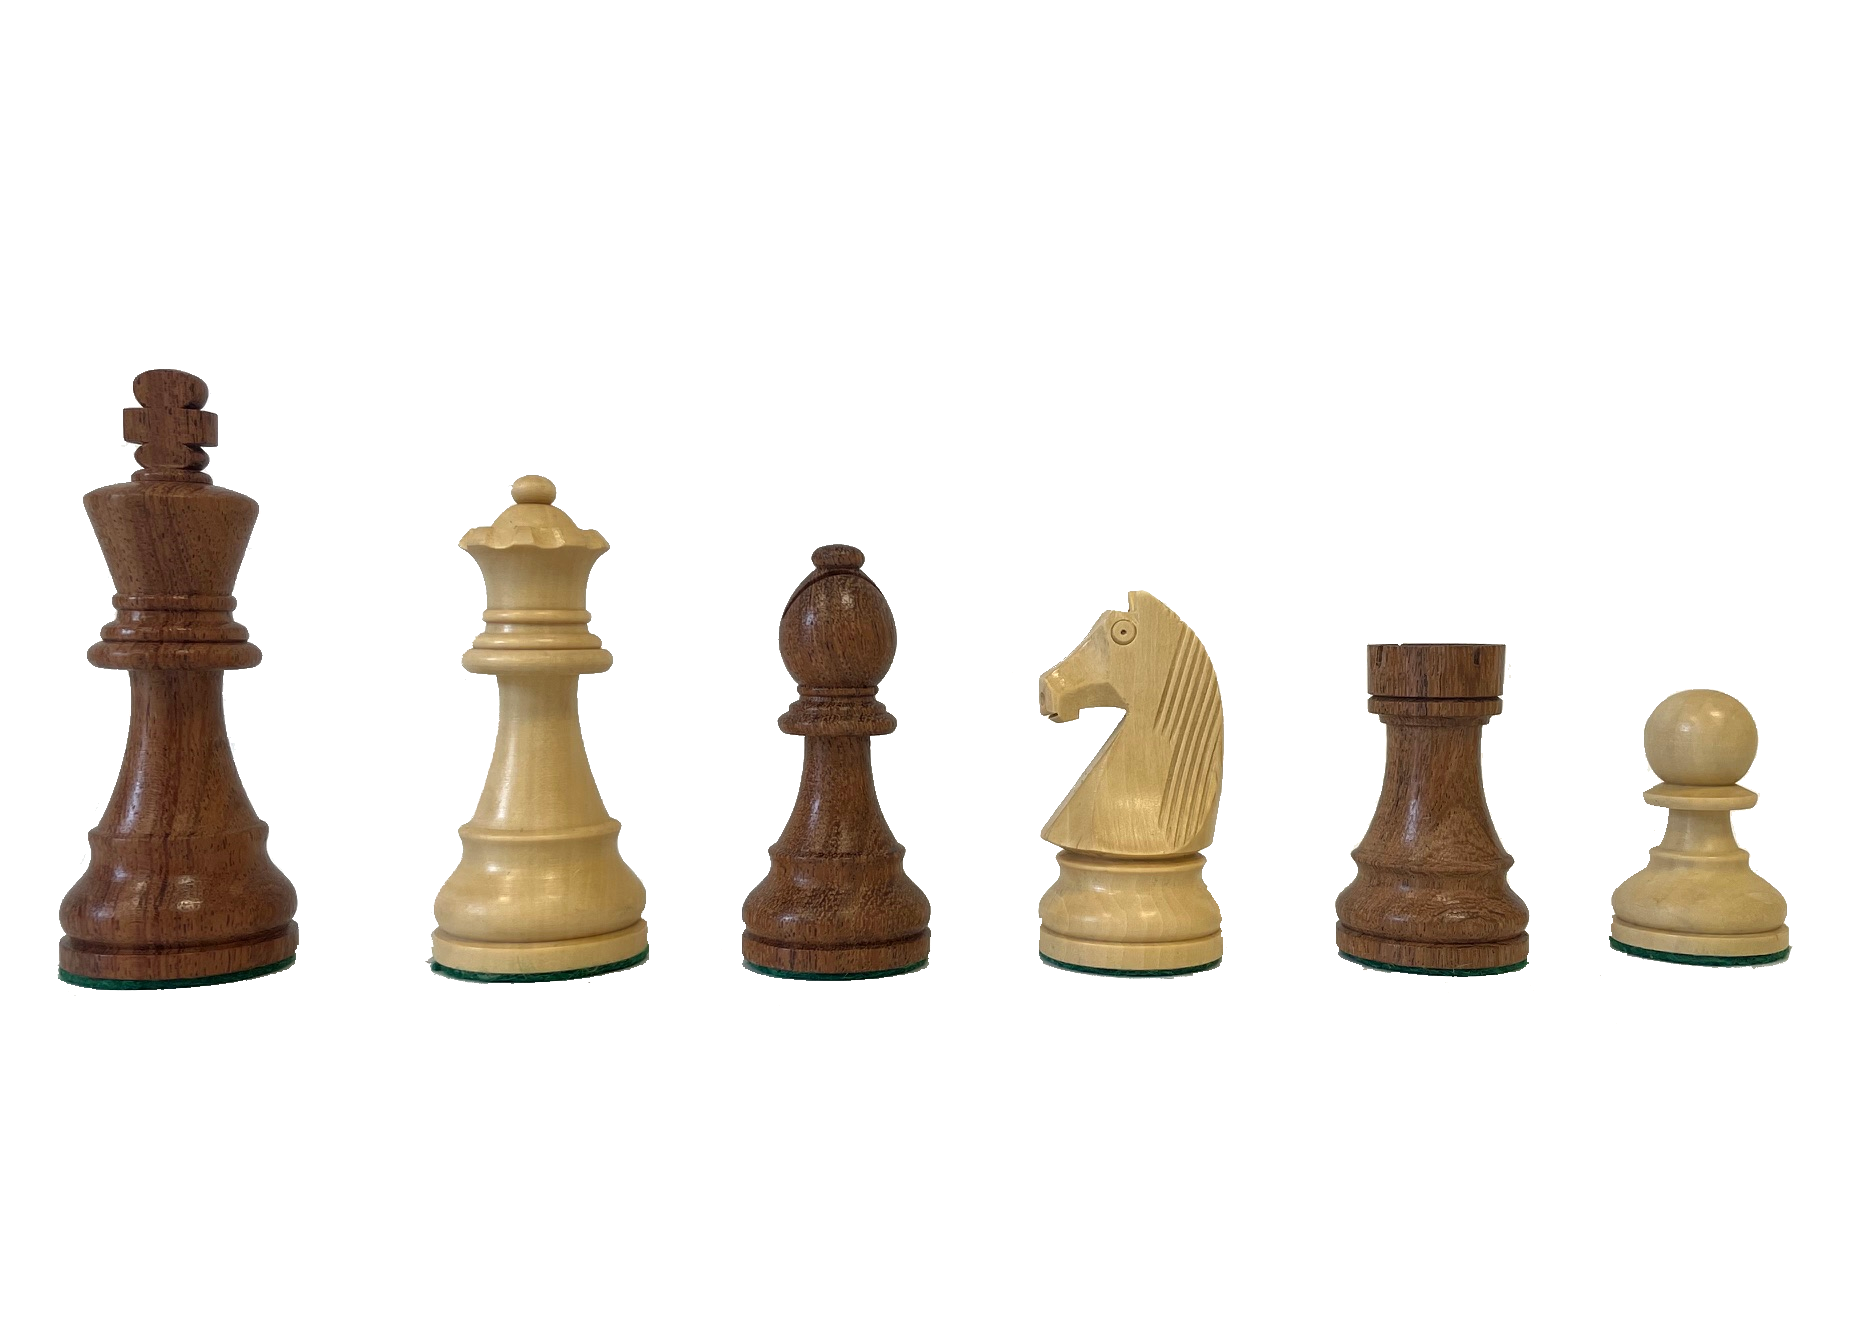 Schachfiguren Classic Staunton Sheesham/Buchsbaum, Königshöhe 97 mm, gewichtet